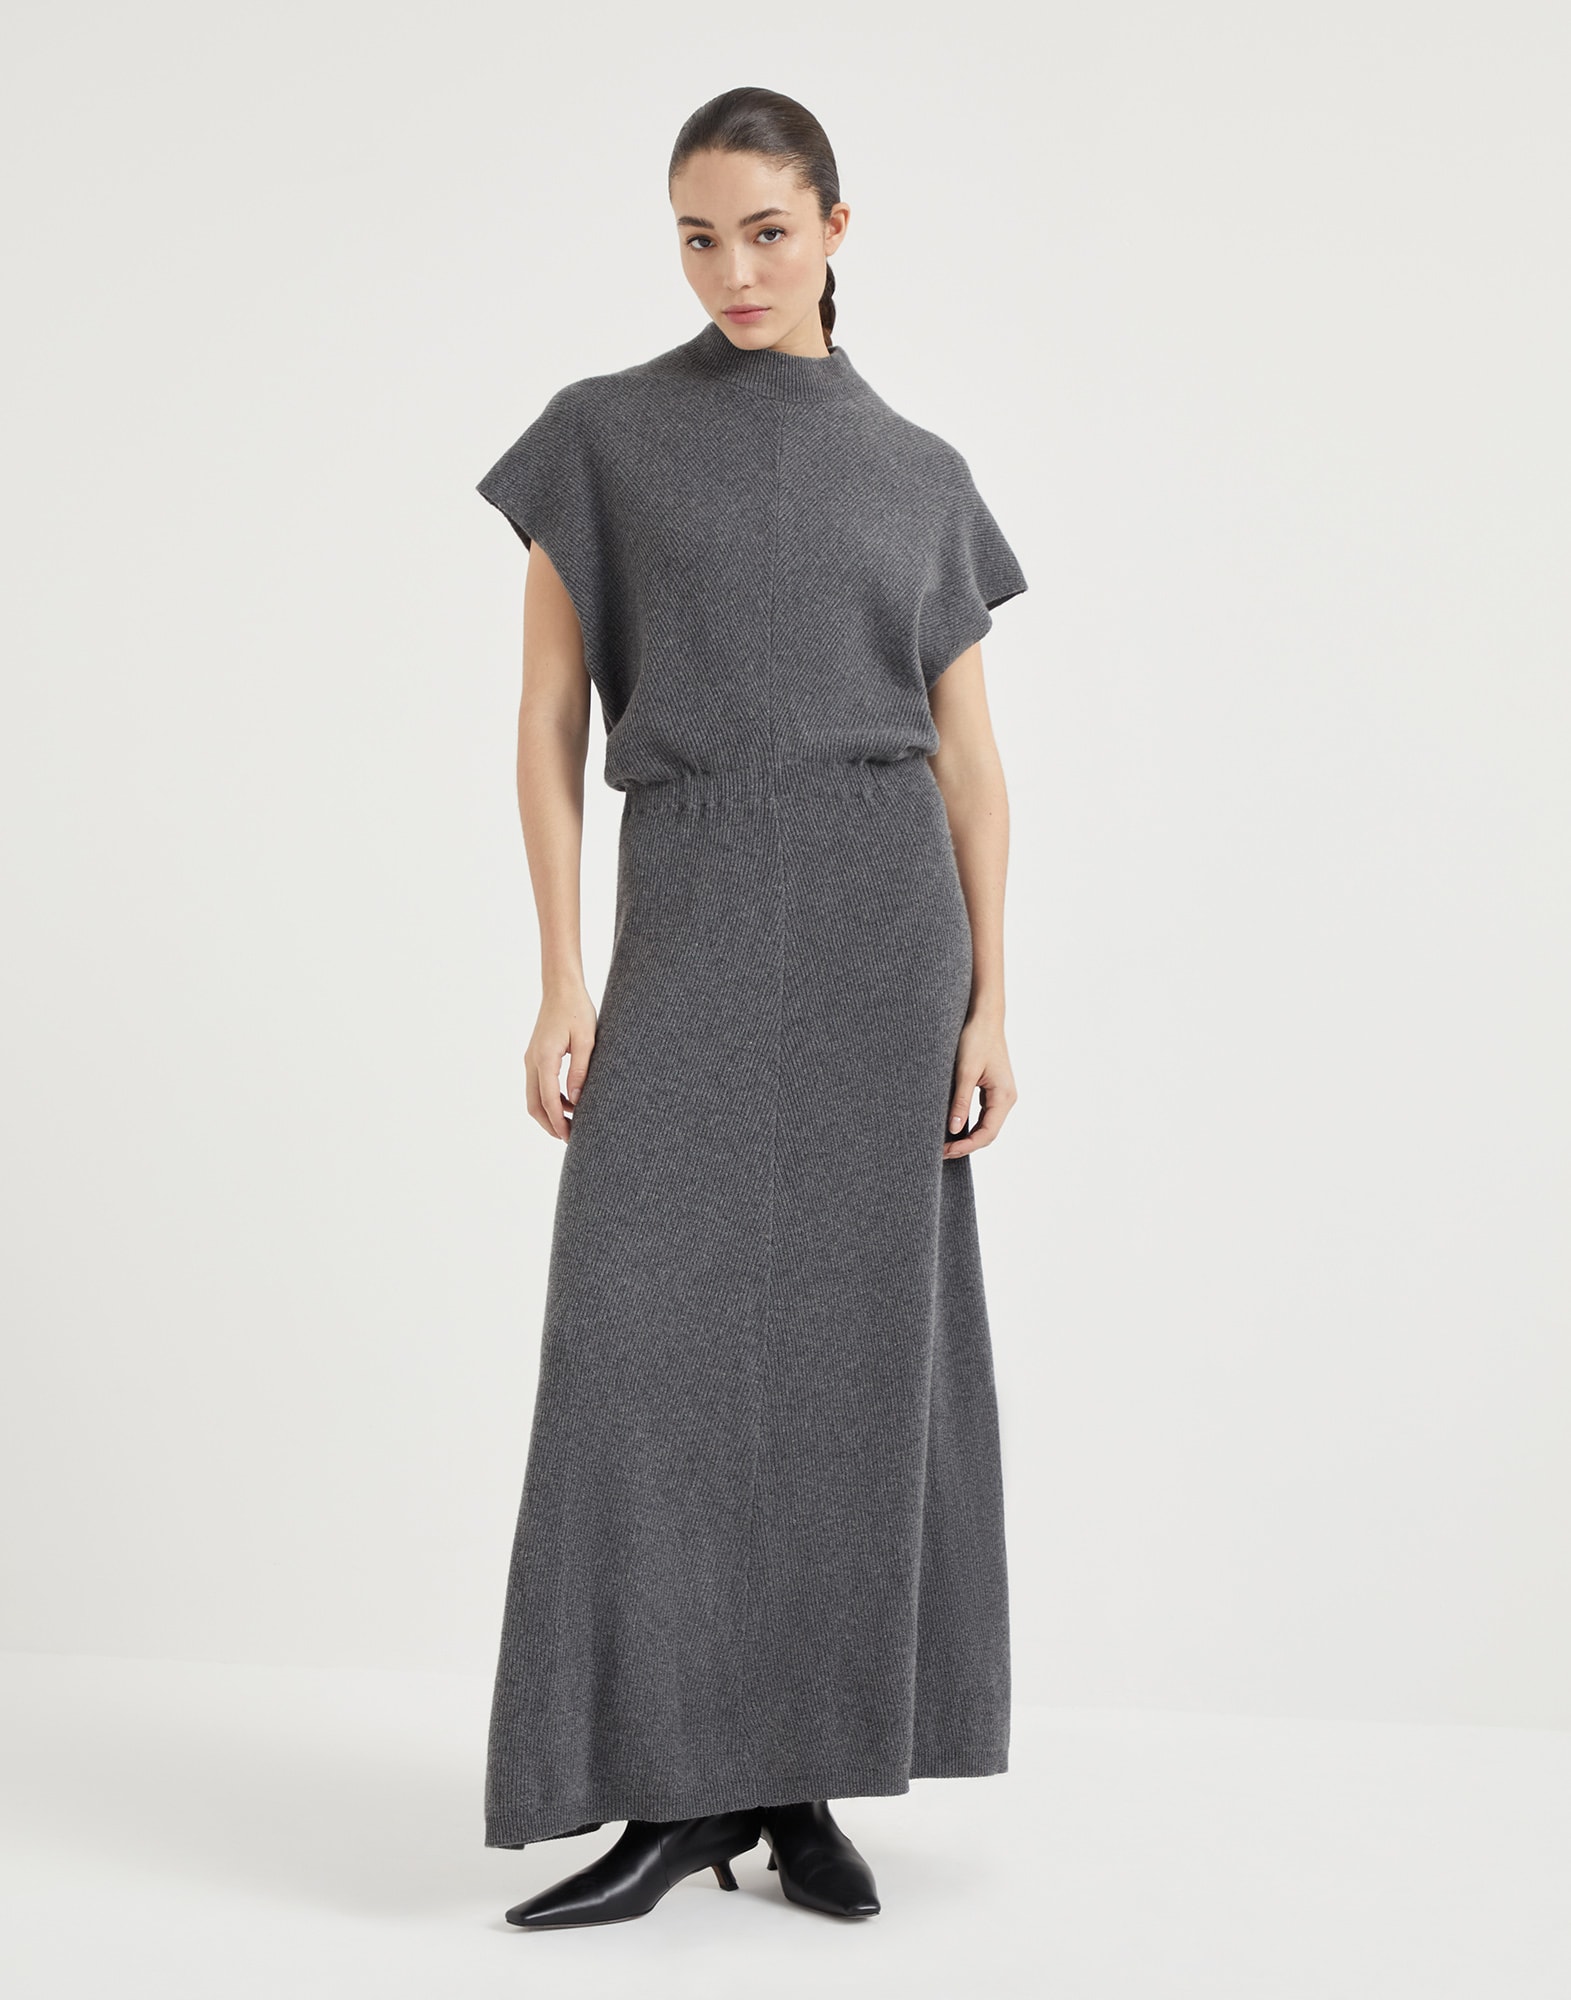 Diagonal knit dress